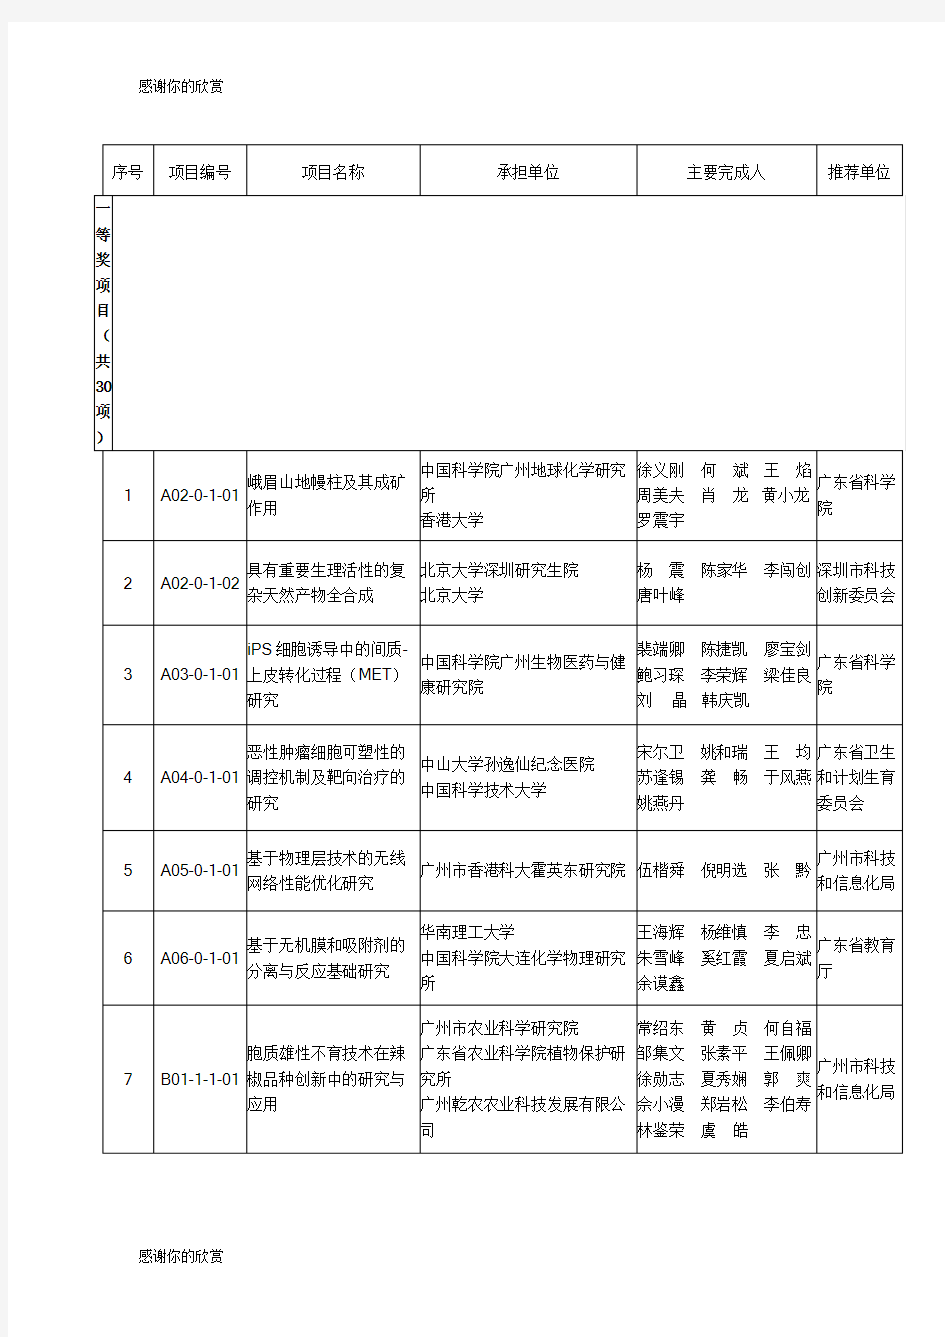 2014年度广东省科学技术奖获奖名单.doc